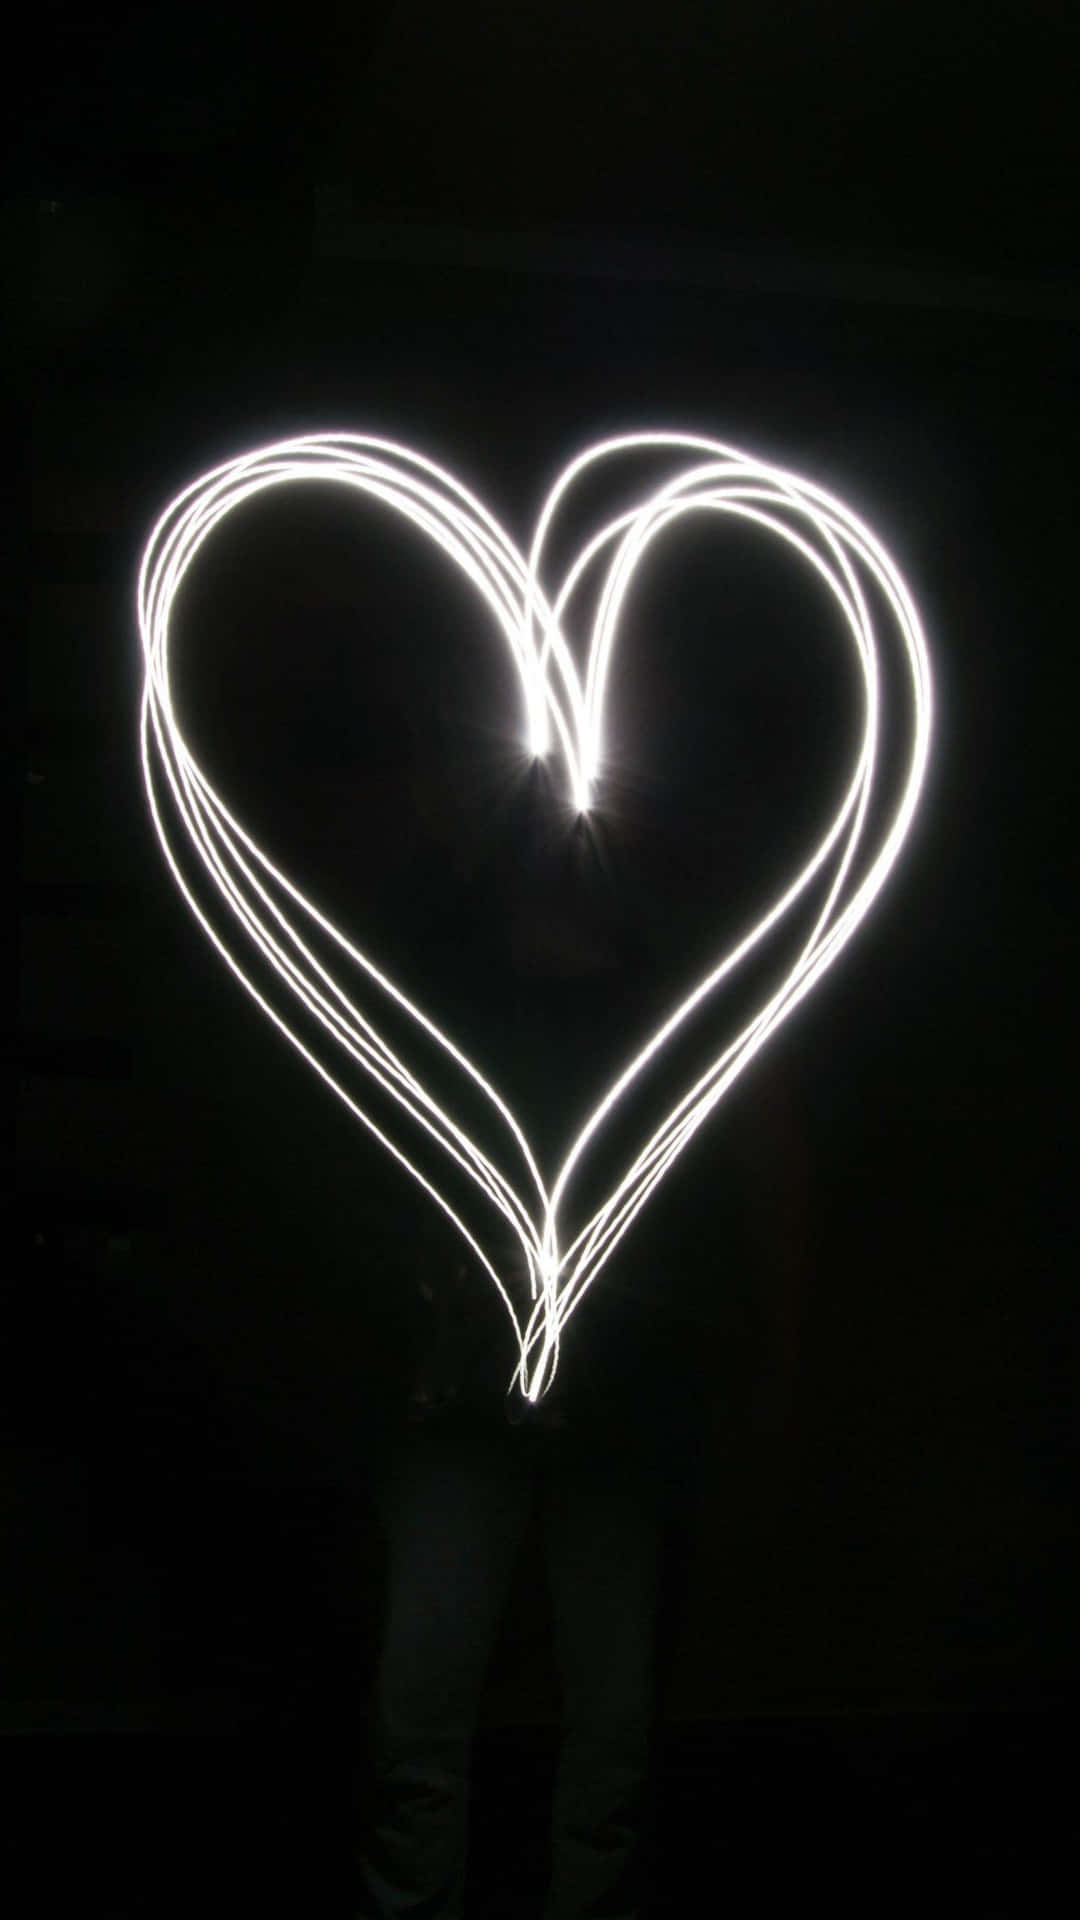 Amorenell'oscurità - Un'immagine Unica Di Un Cuore Nero Illuminato Da Luci Bianche Per Iphone. Sfondo